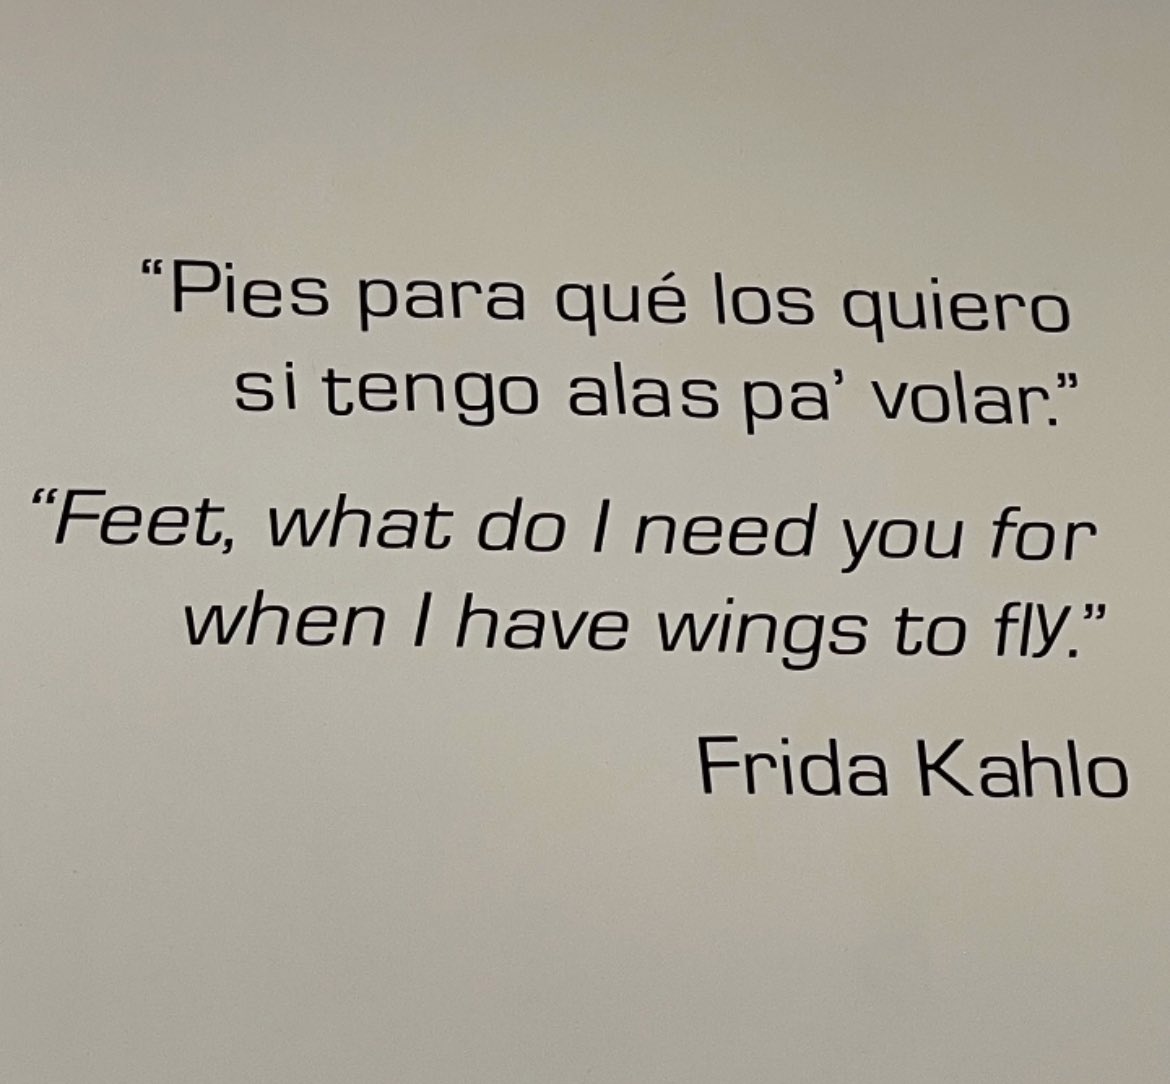 'Pies para qué los quiero, si tengo alas pa' volar.' #FridaKhalo